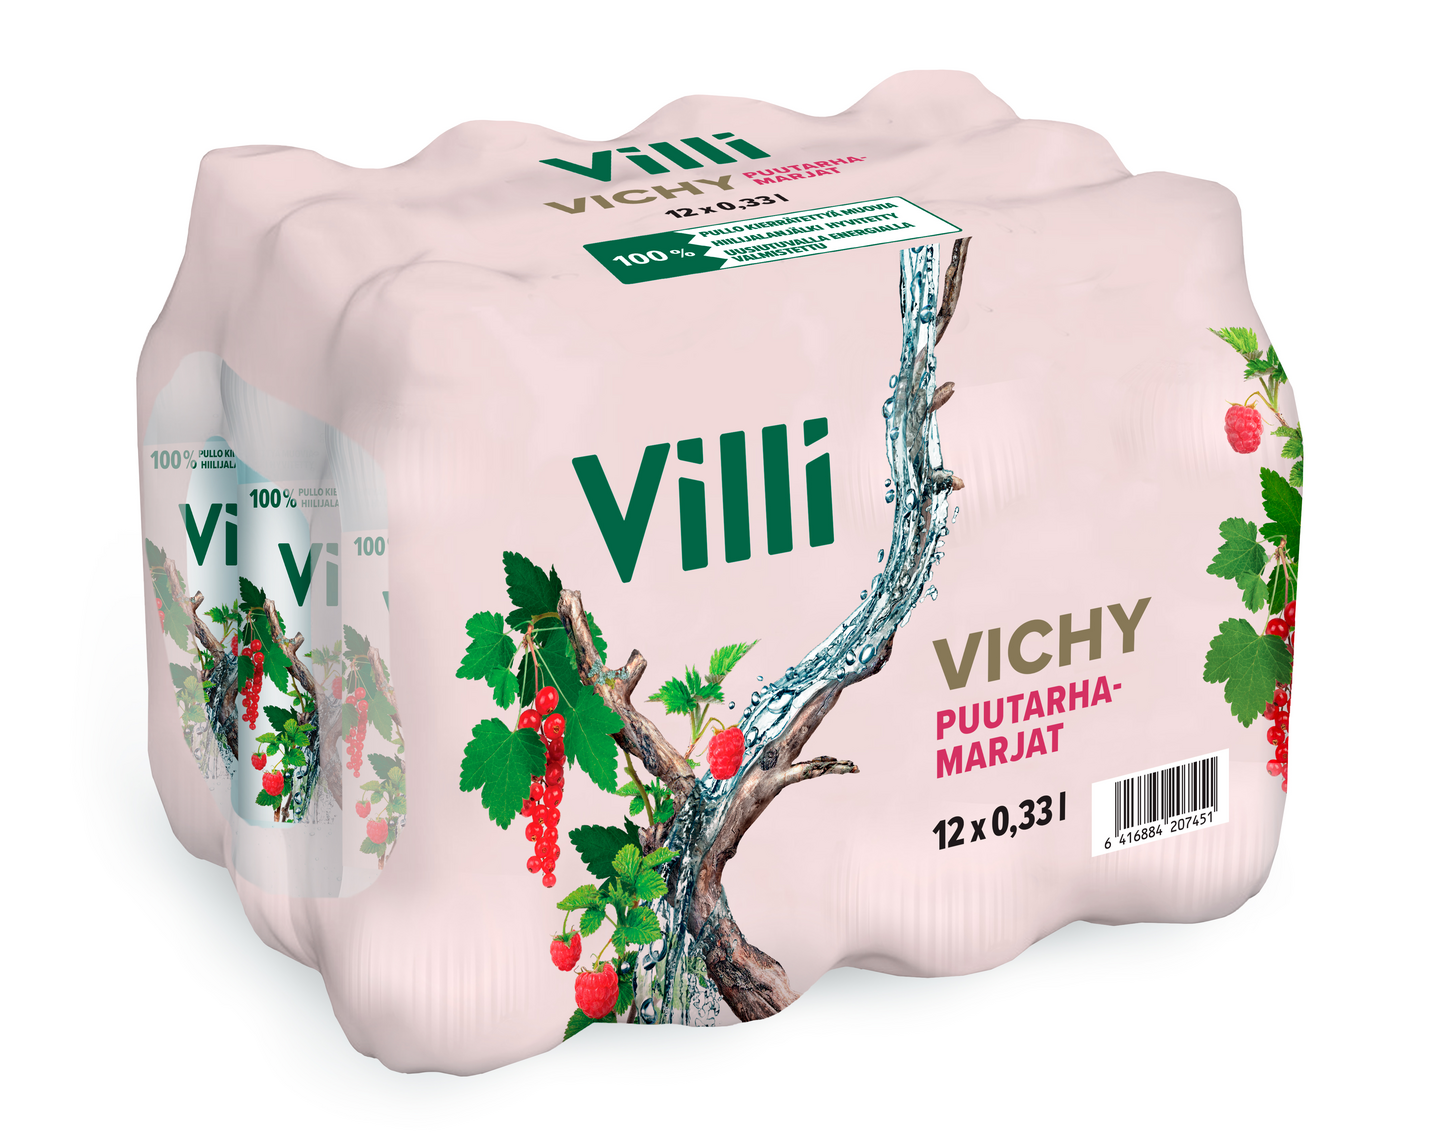 Villi Vichy puutarhamarjat 0,33l 12-pack